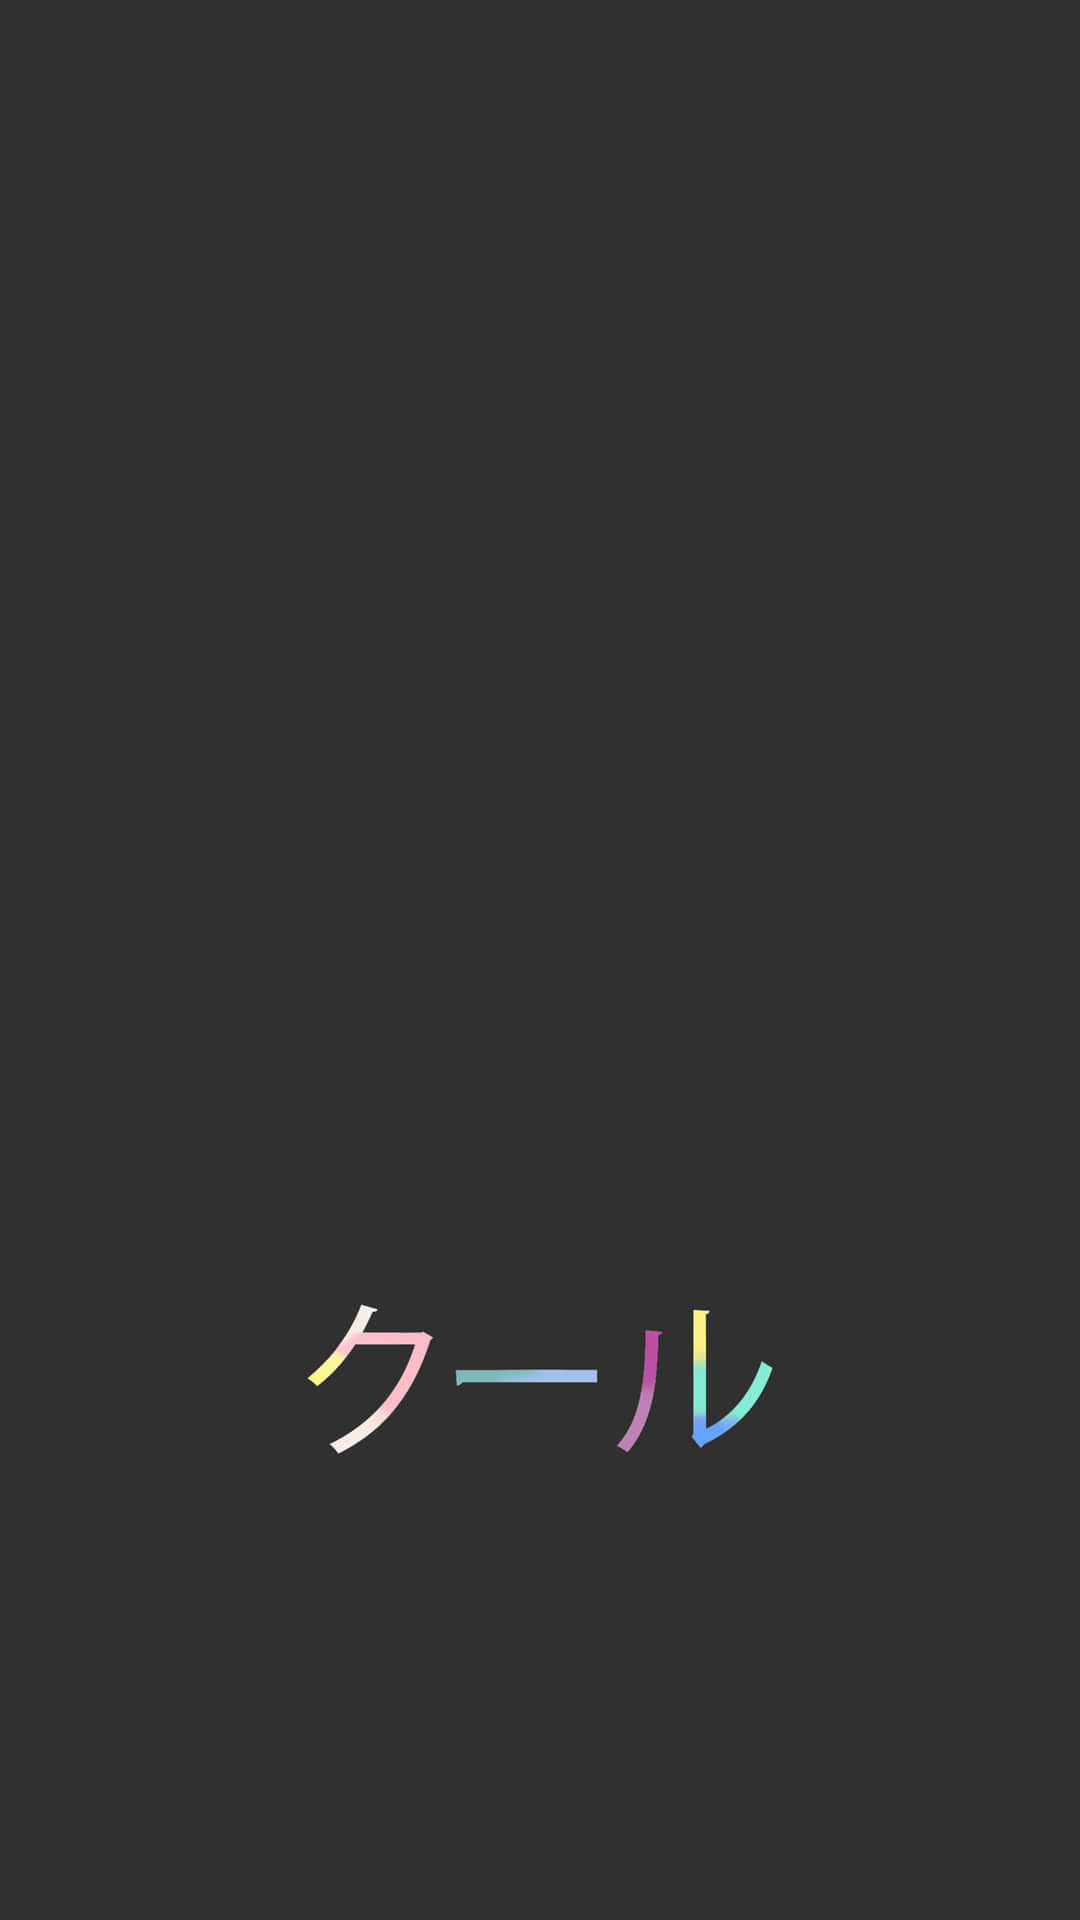 Erlebensie Den Minimalistischen Stil Mit Diesem Dunklen Japanischen Iphone-hintergrundbild. Wallpaper